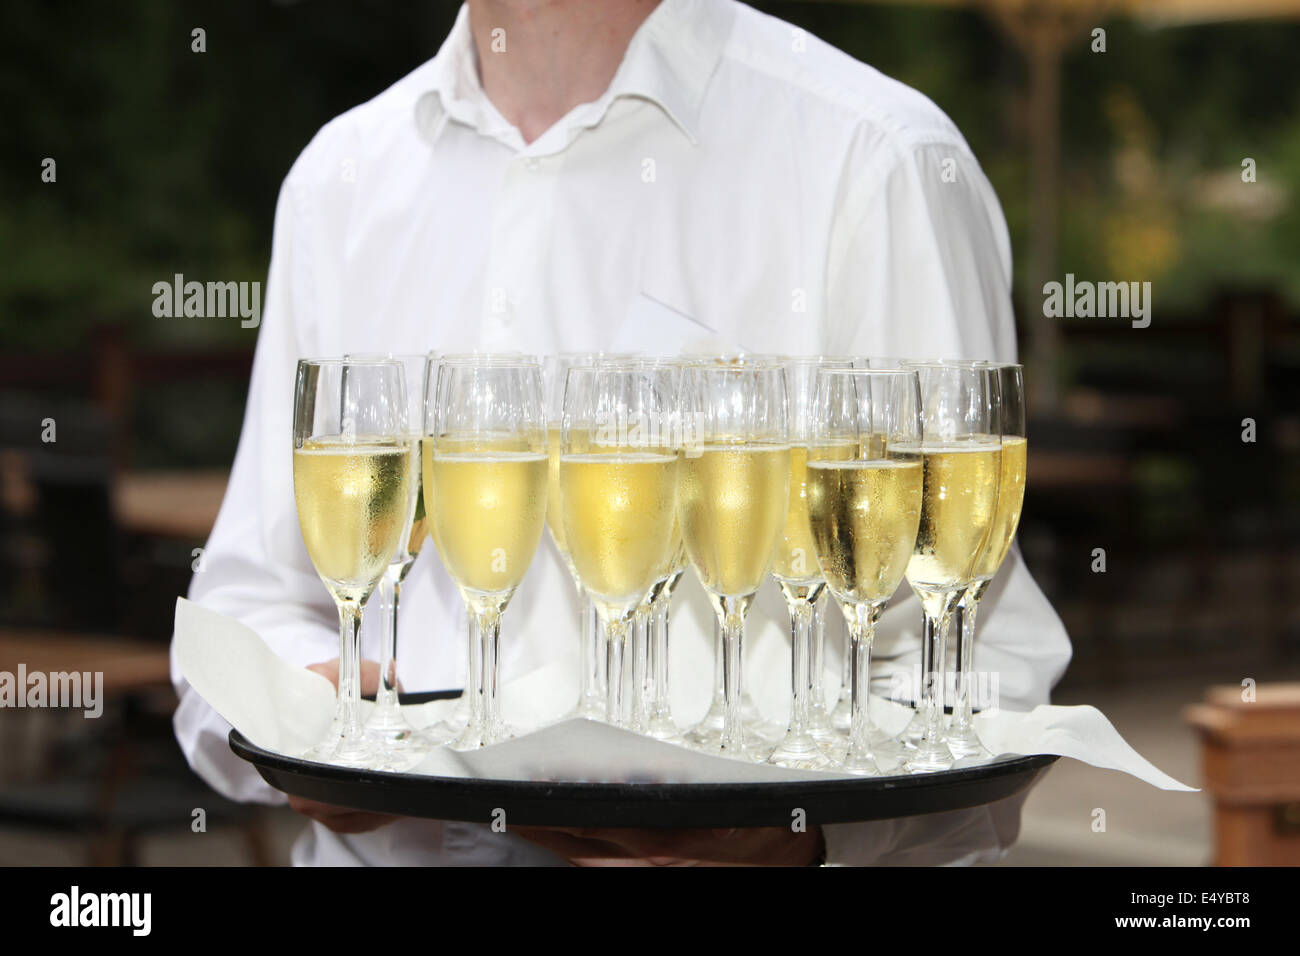 Der Kellner mit einem Tablett mit Champagner-Flöten Stockfoto